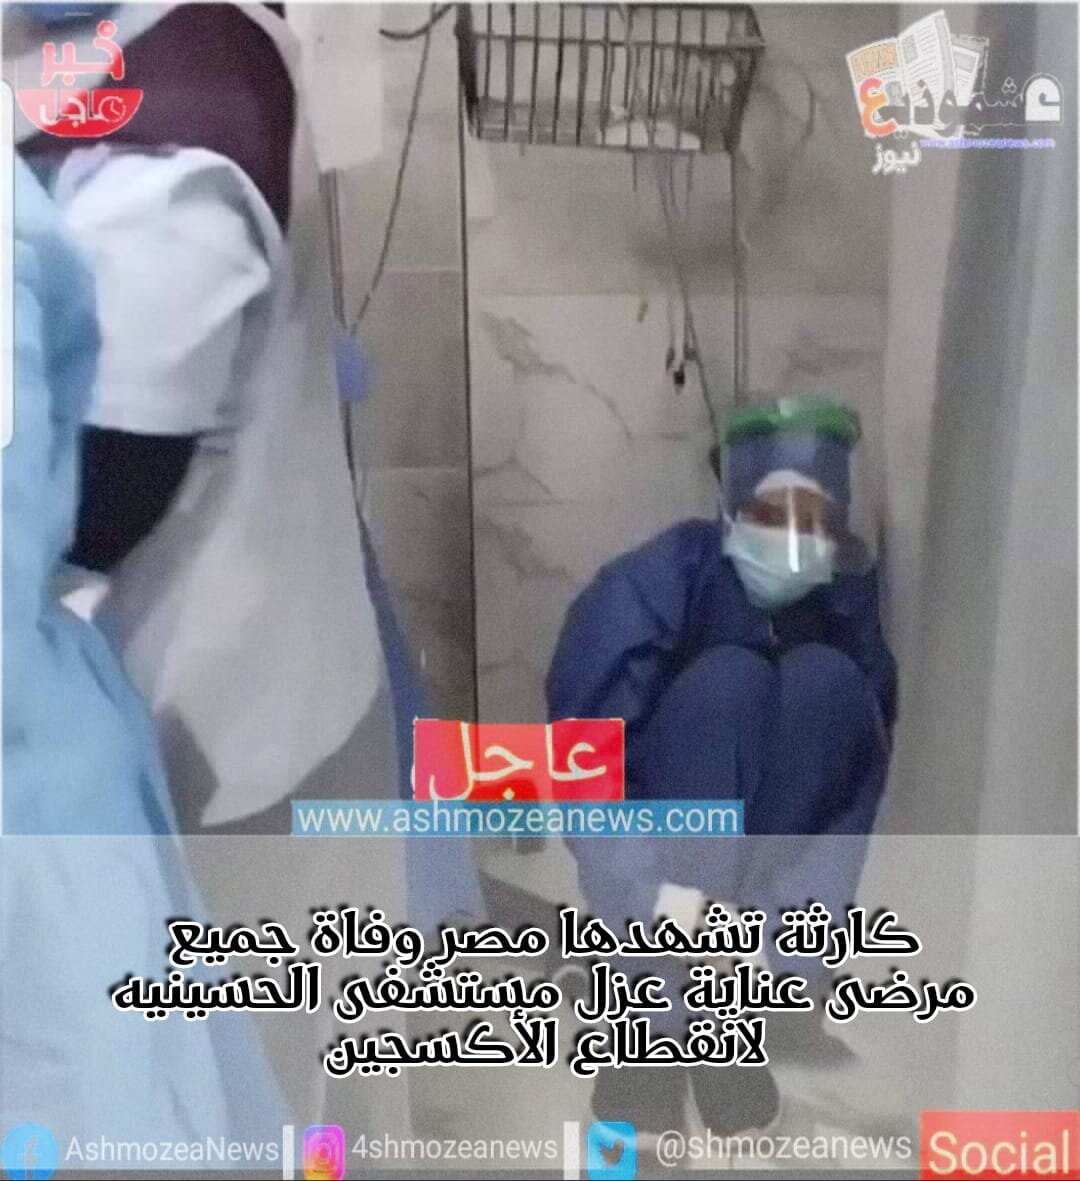 كارثة تشهدها مصر وفاة جميع مرضى عناية عزل مستشفى الحسينيه لانقطاع الأكسجين 